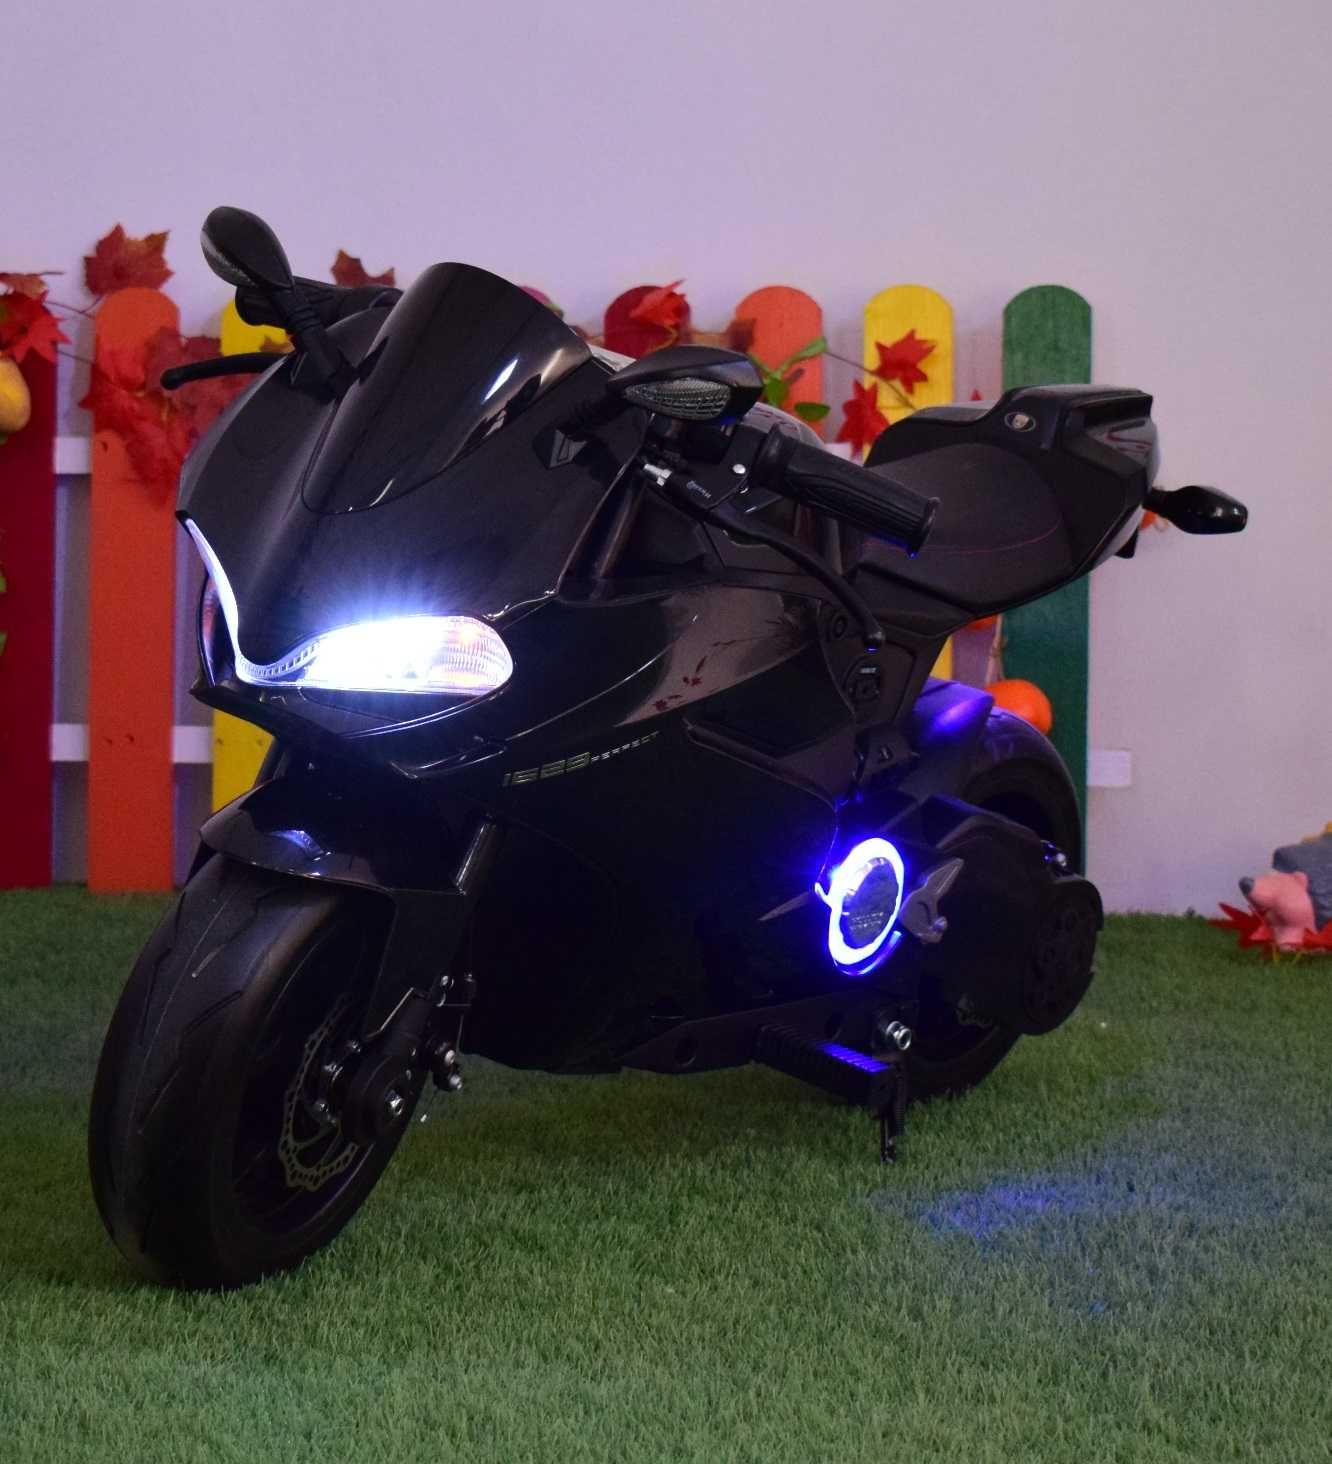 Motocicleta electrica pentru copii KinderAuto SX1629 250W 24V #Black